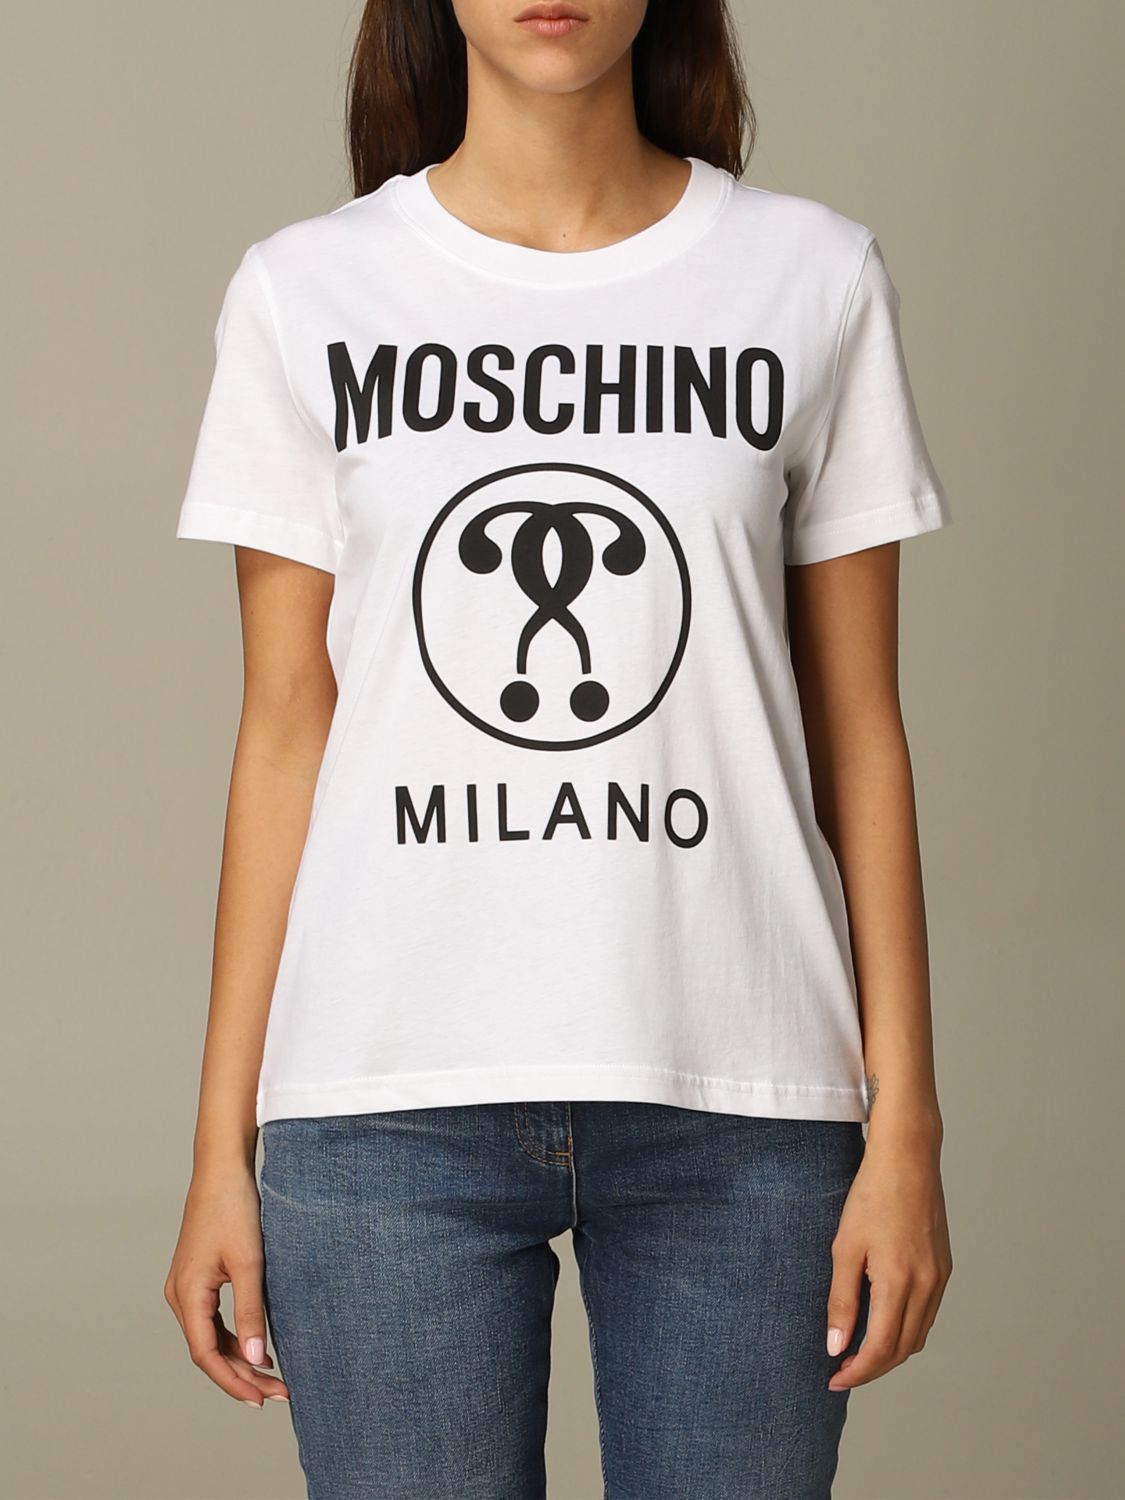 moschino couture t shirt women's